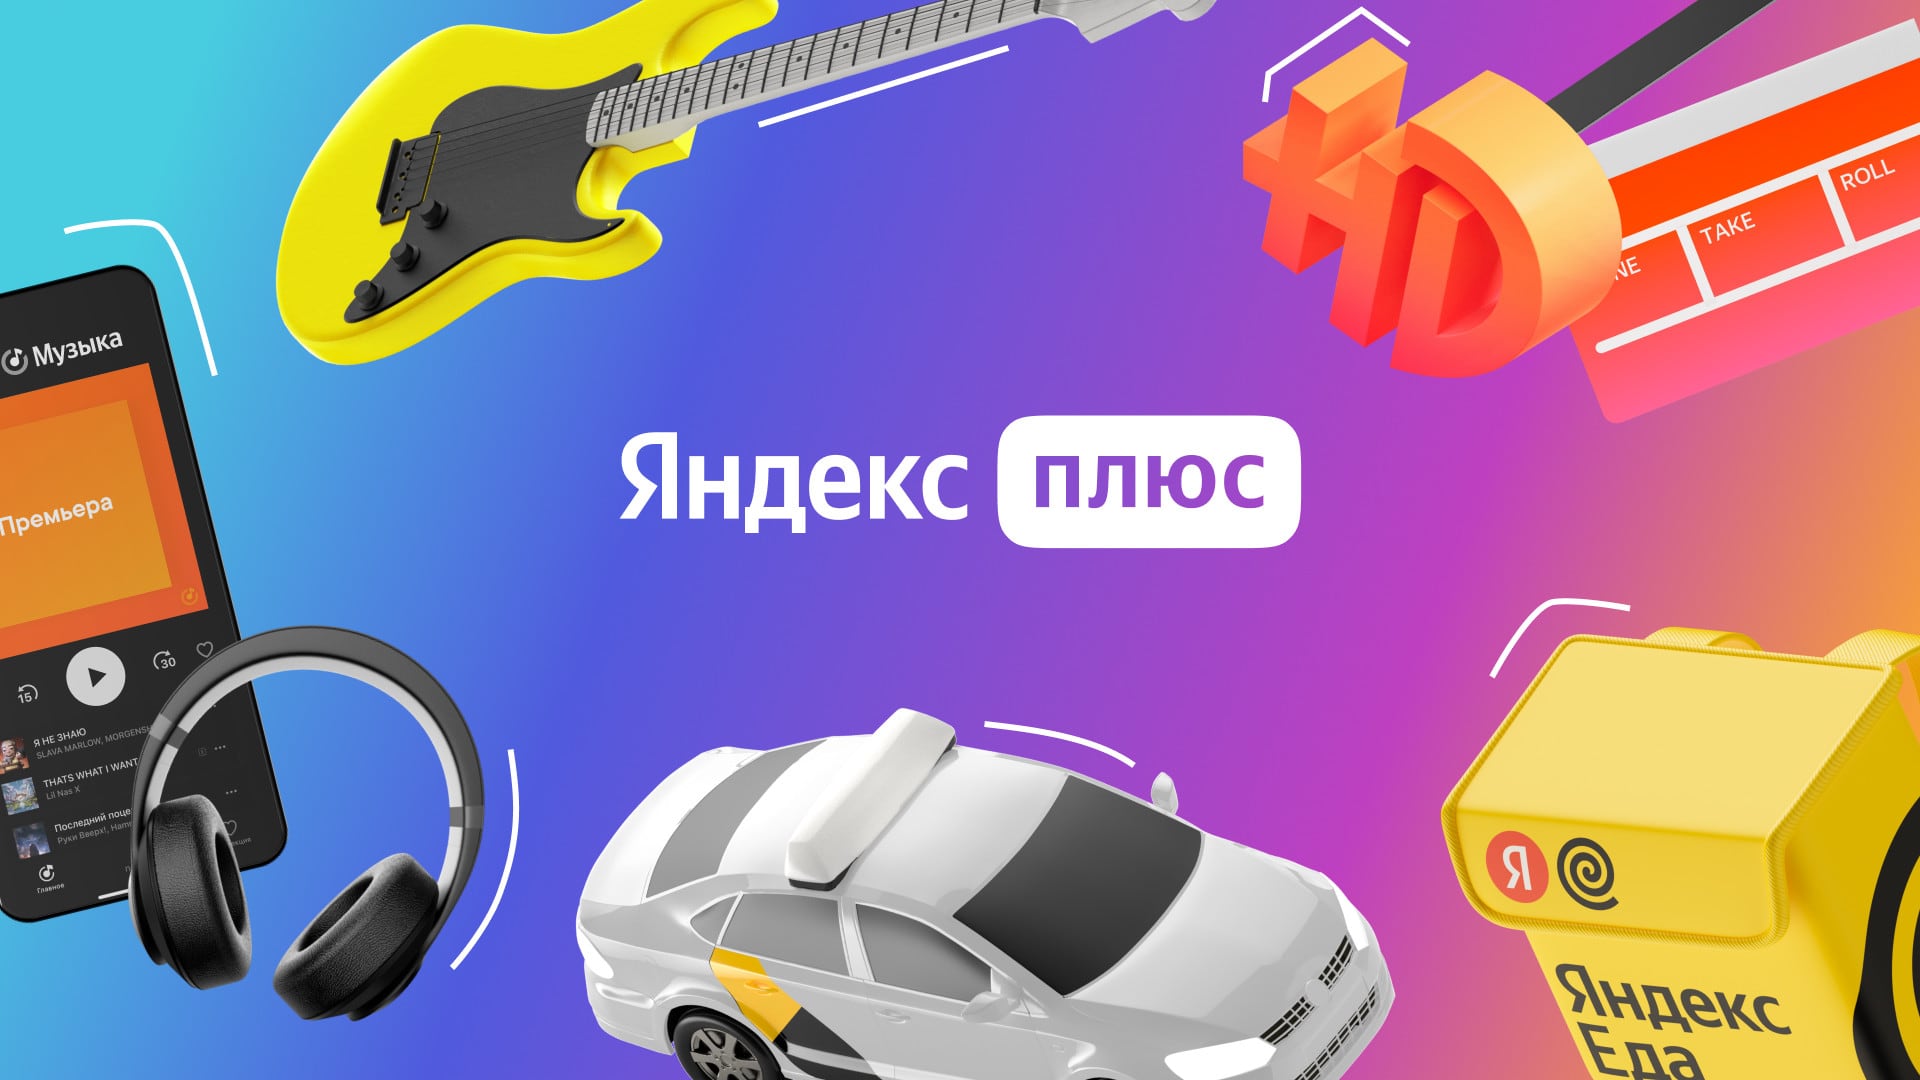 Подписка Яндекс Плюс подорожала до 299 рублей в месяц